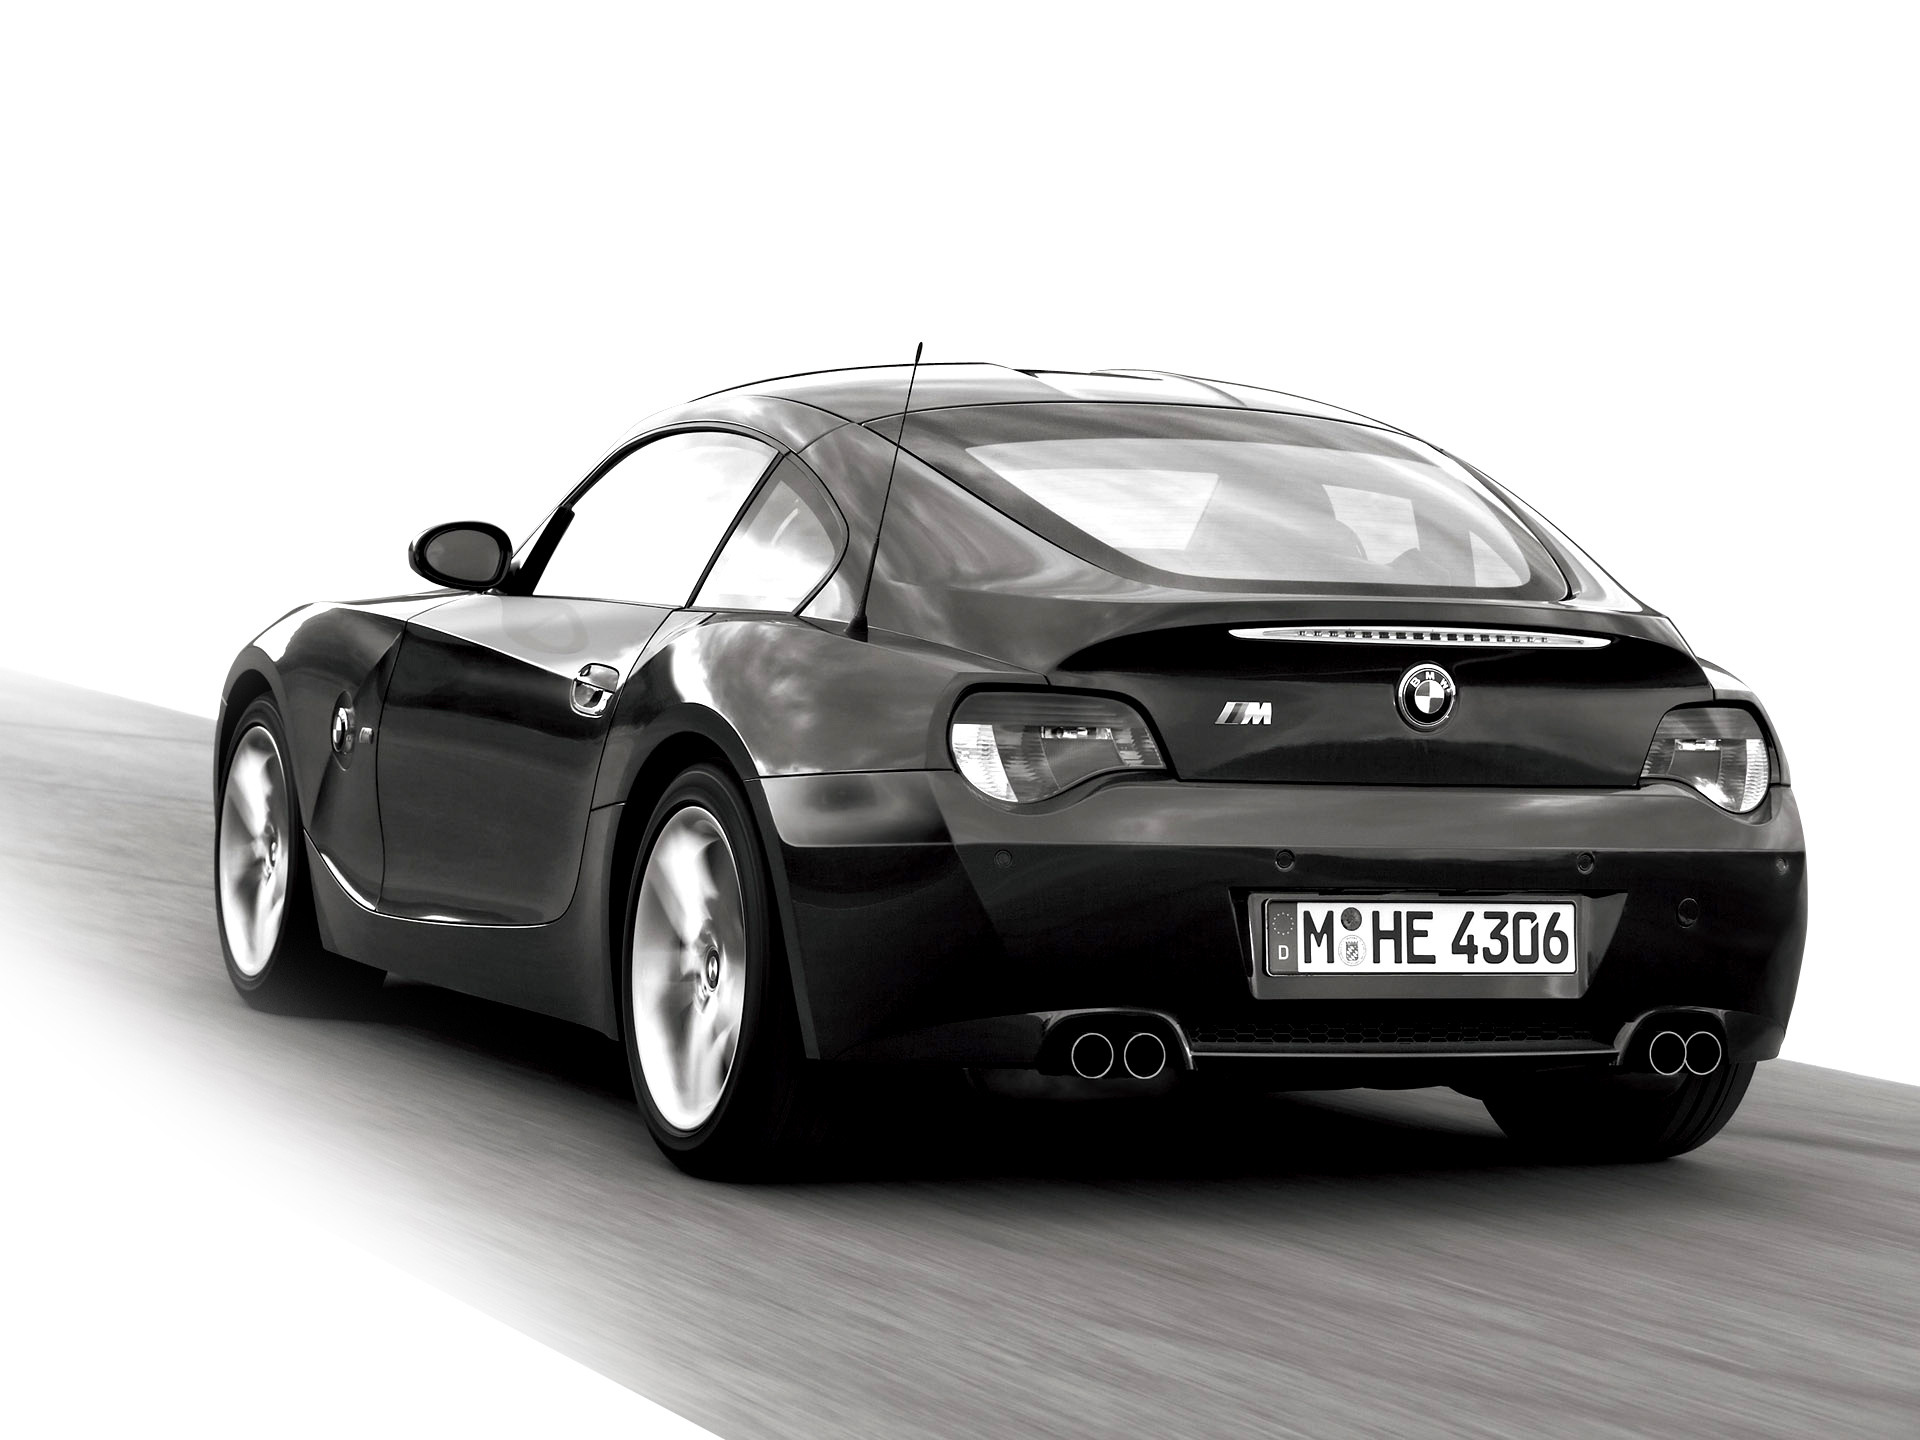  2006 BMW Z4 M Coupe Wallpaper.